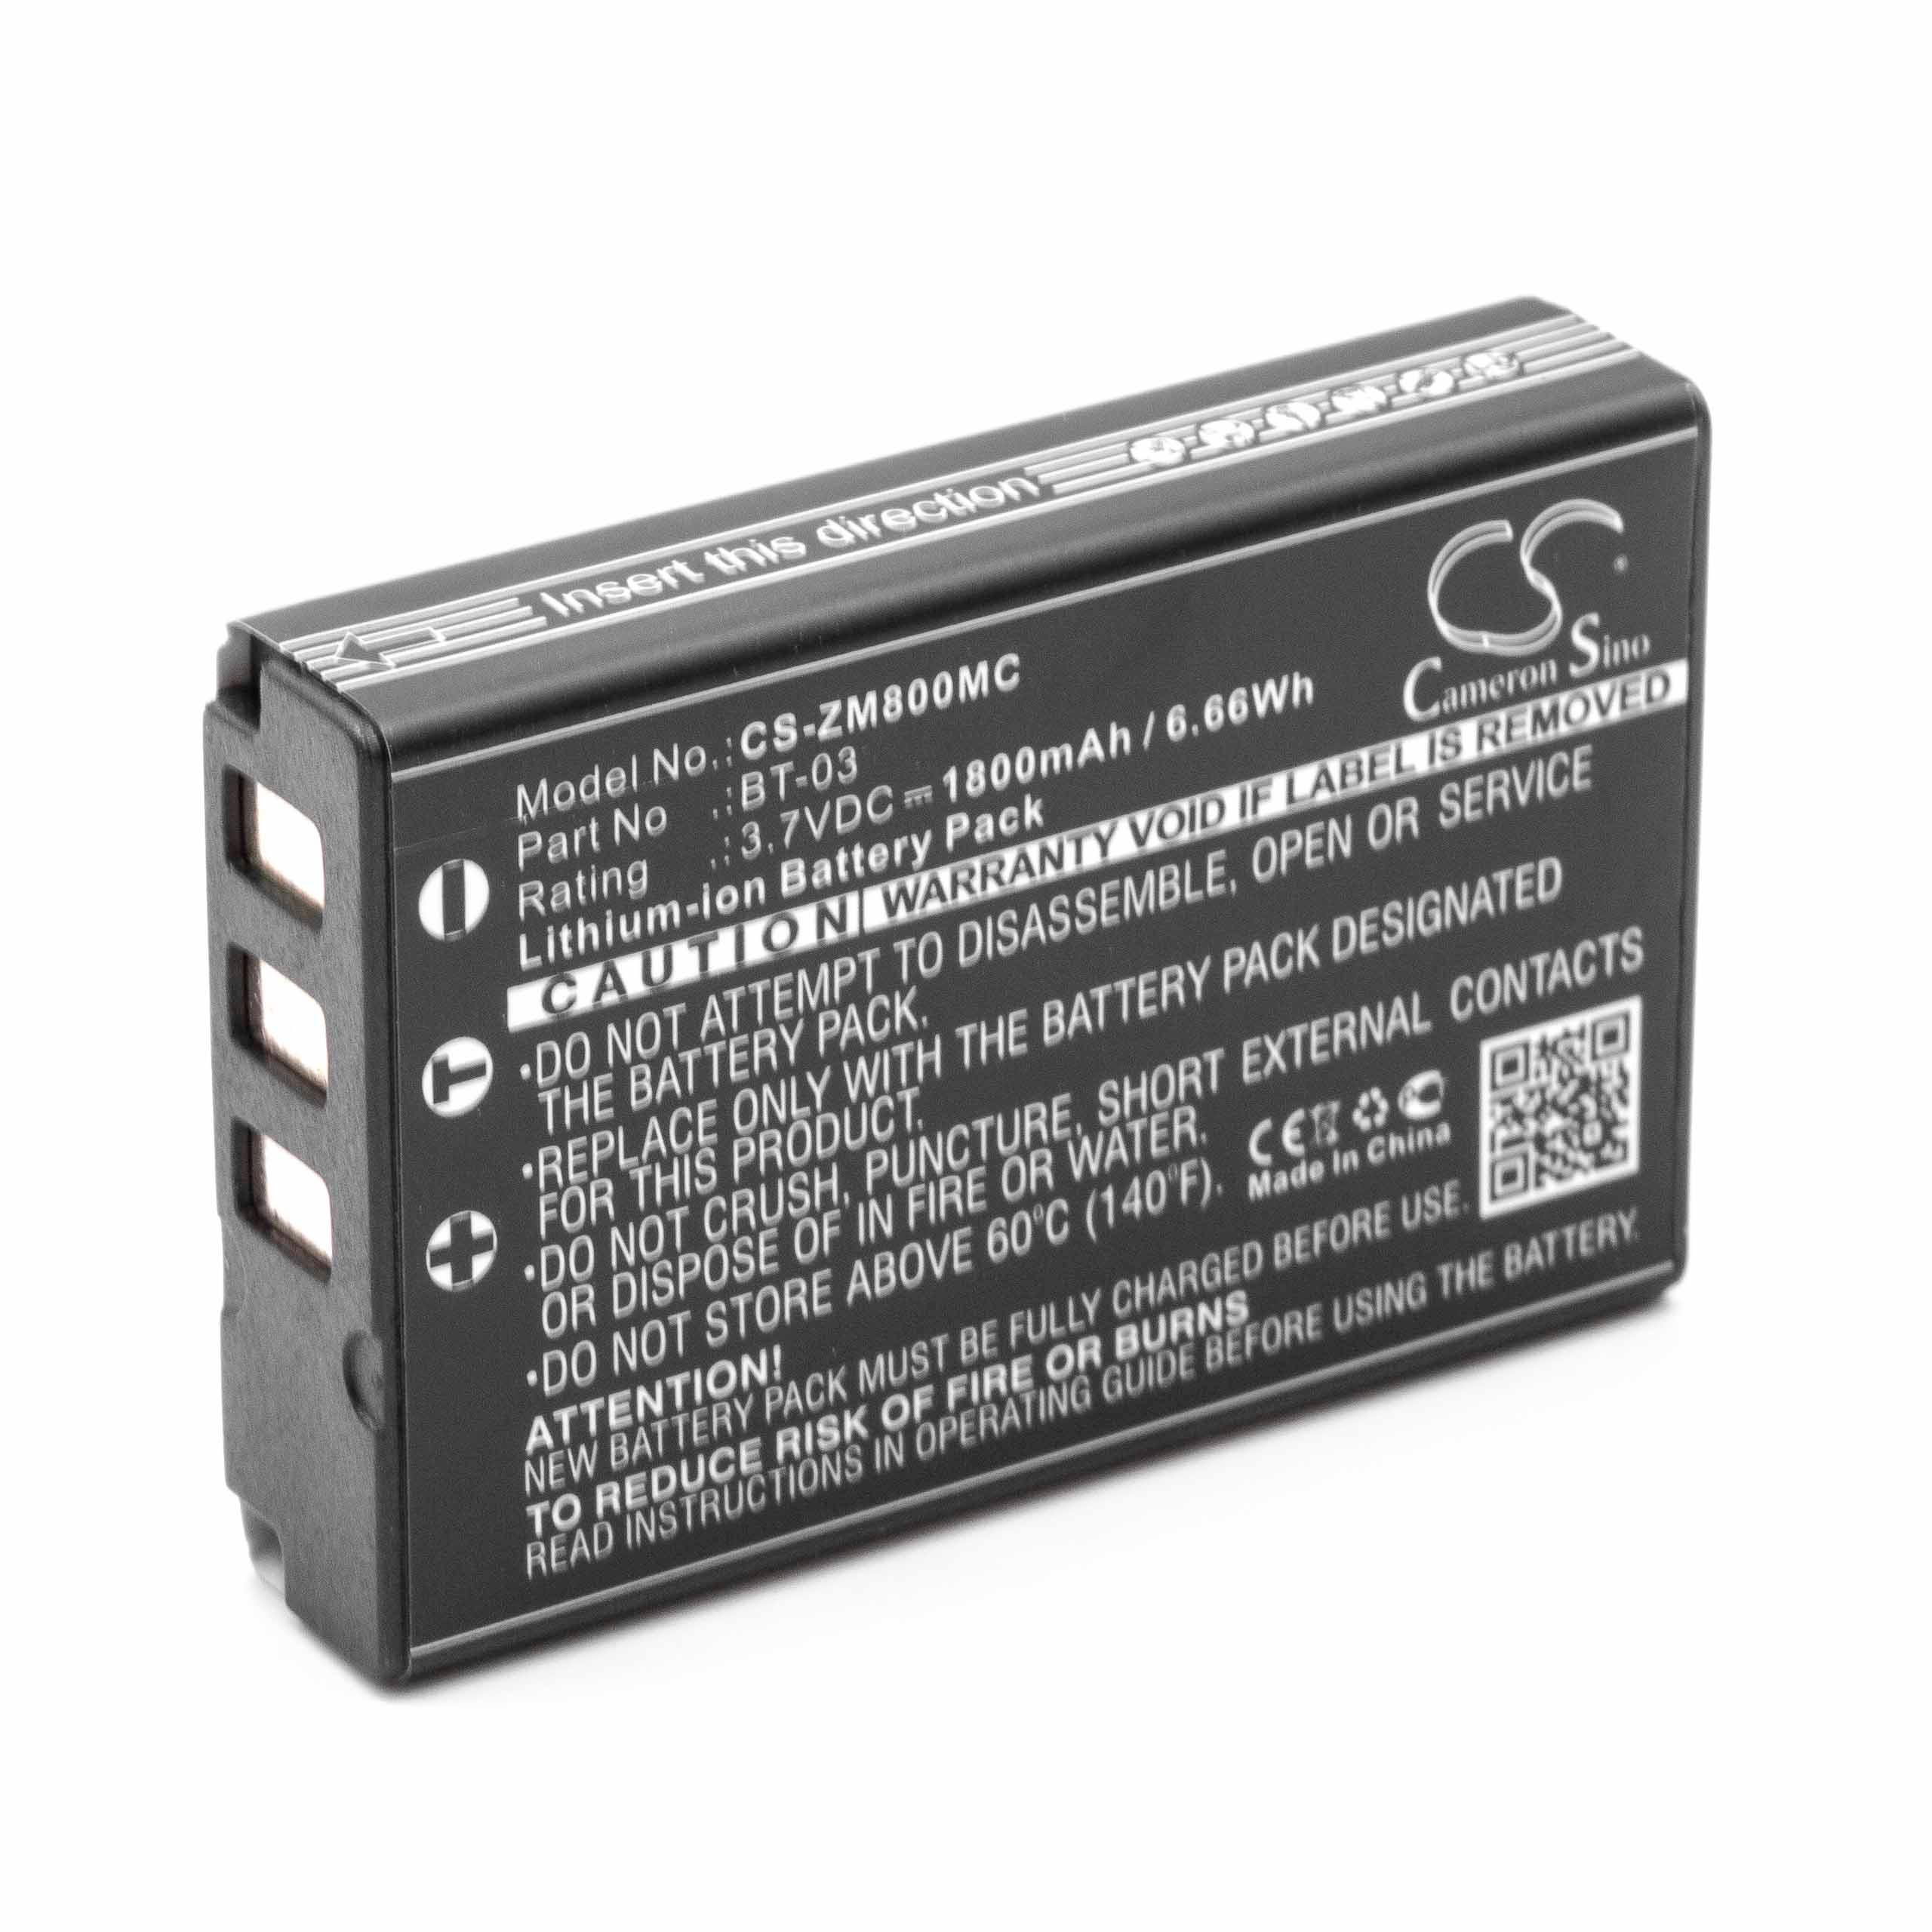 Batterie remplace Zoom BT-03 pour appareil photo - 1800mAh 3,7V Li-ion